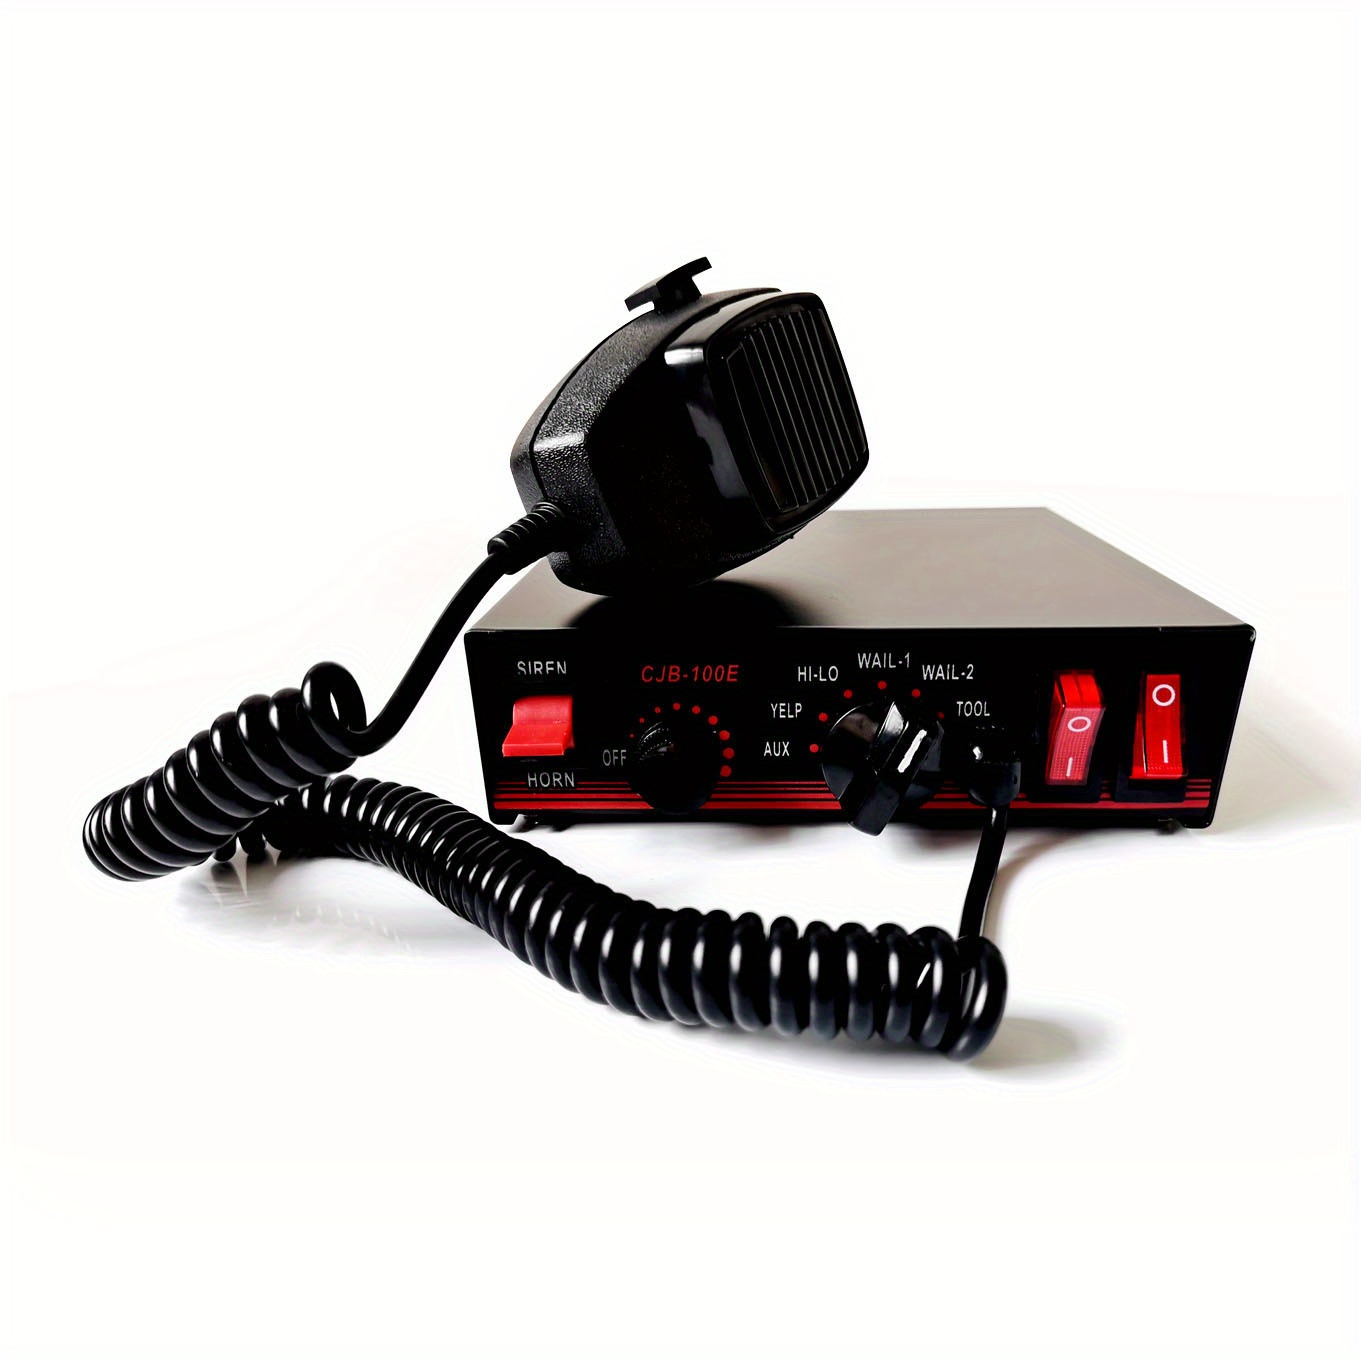 Apex - Sirena de policía de 100 vatios y sistema de sirena de emergencia  con bocina y micrófono PA